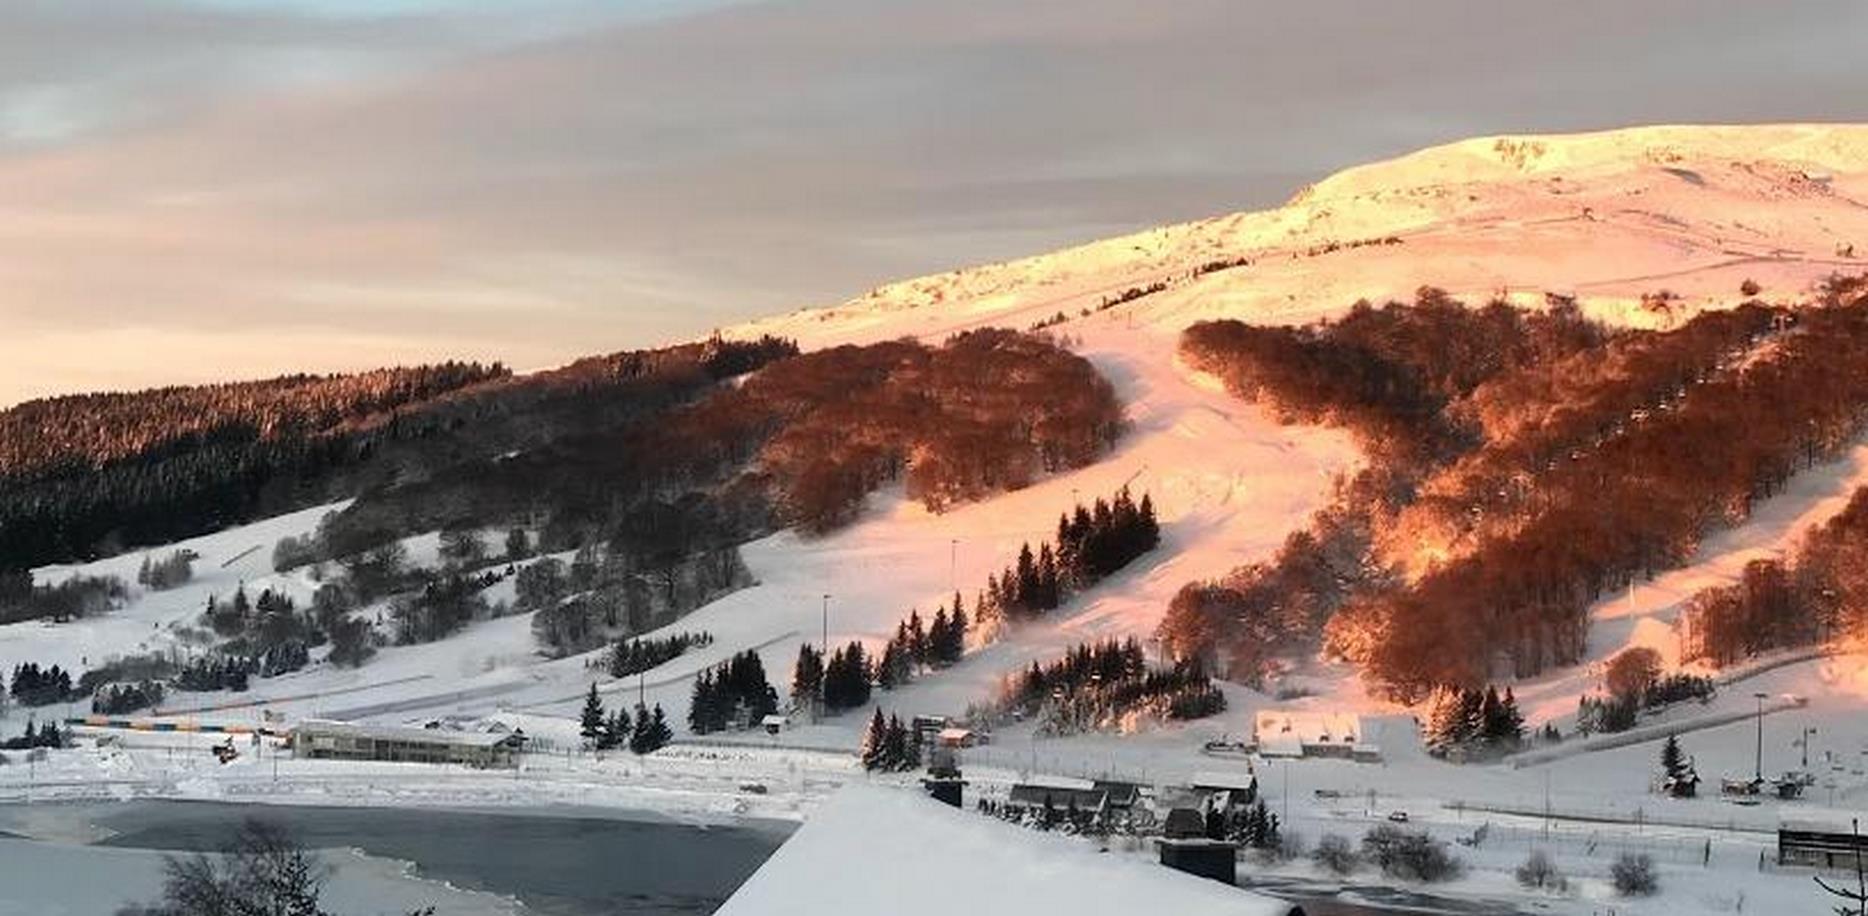 Chalet avec vue ilmprenable sur les pistes de ski de Super Besse le matin